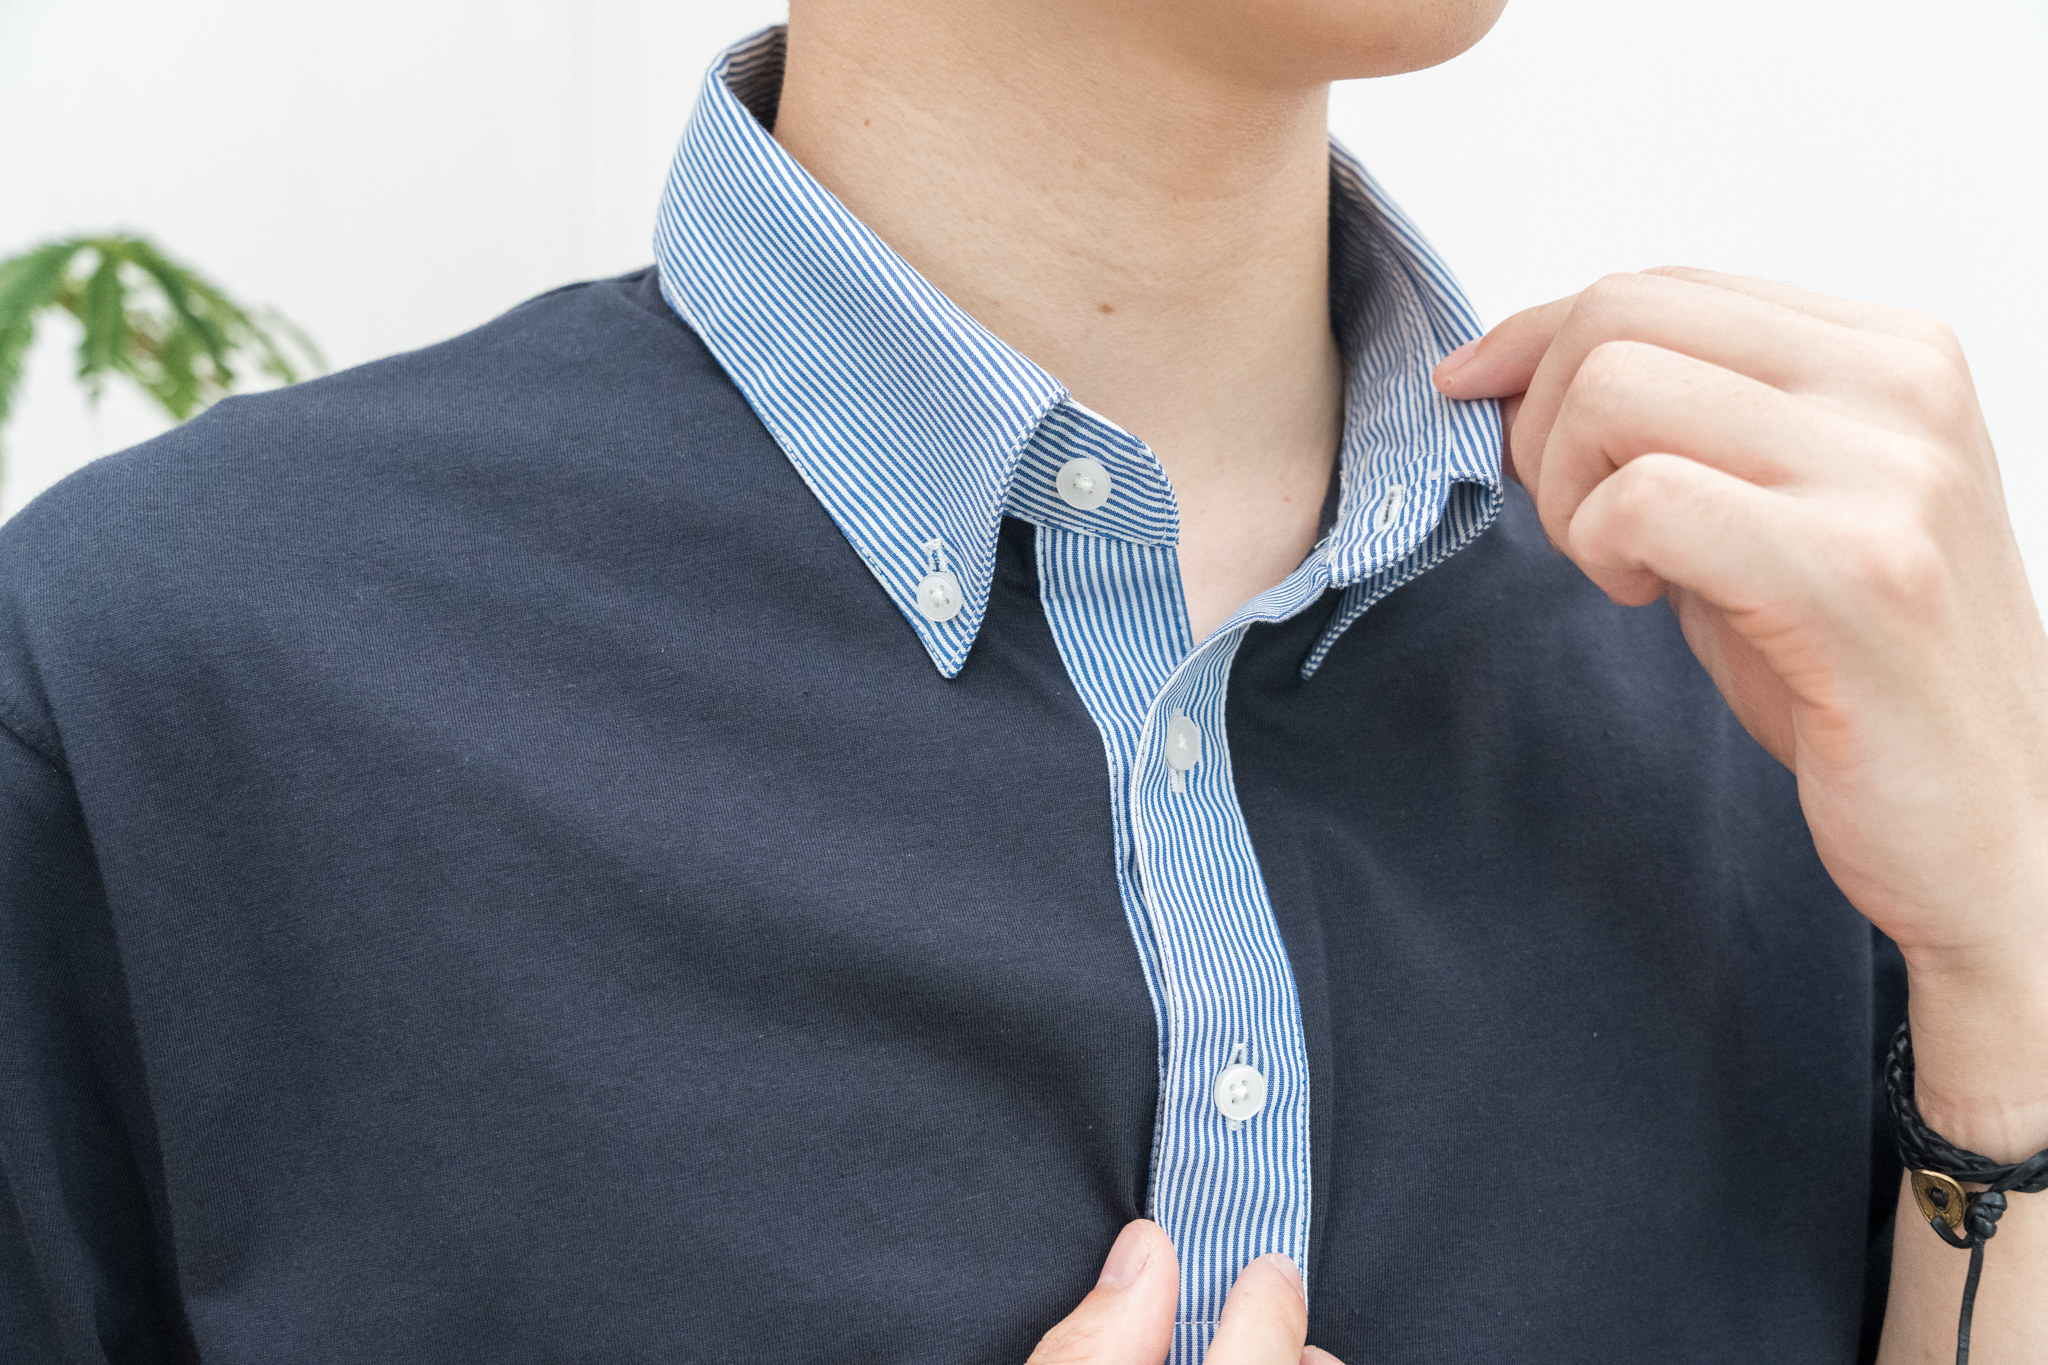 UNIQLO（ユニクロ ）のおすすめメンズトップス「エアリズム フハク襟ポロシャツ（半袖）」夏のコーデをご紹介